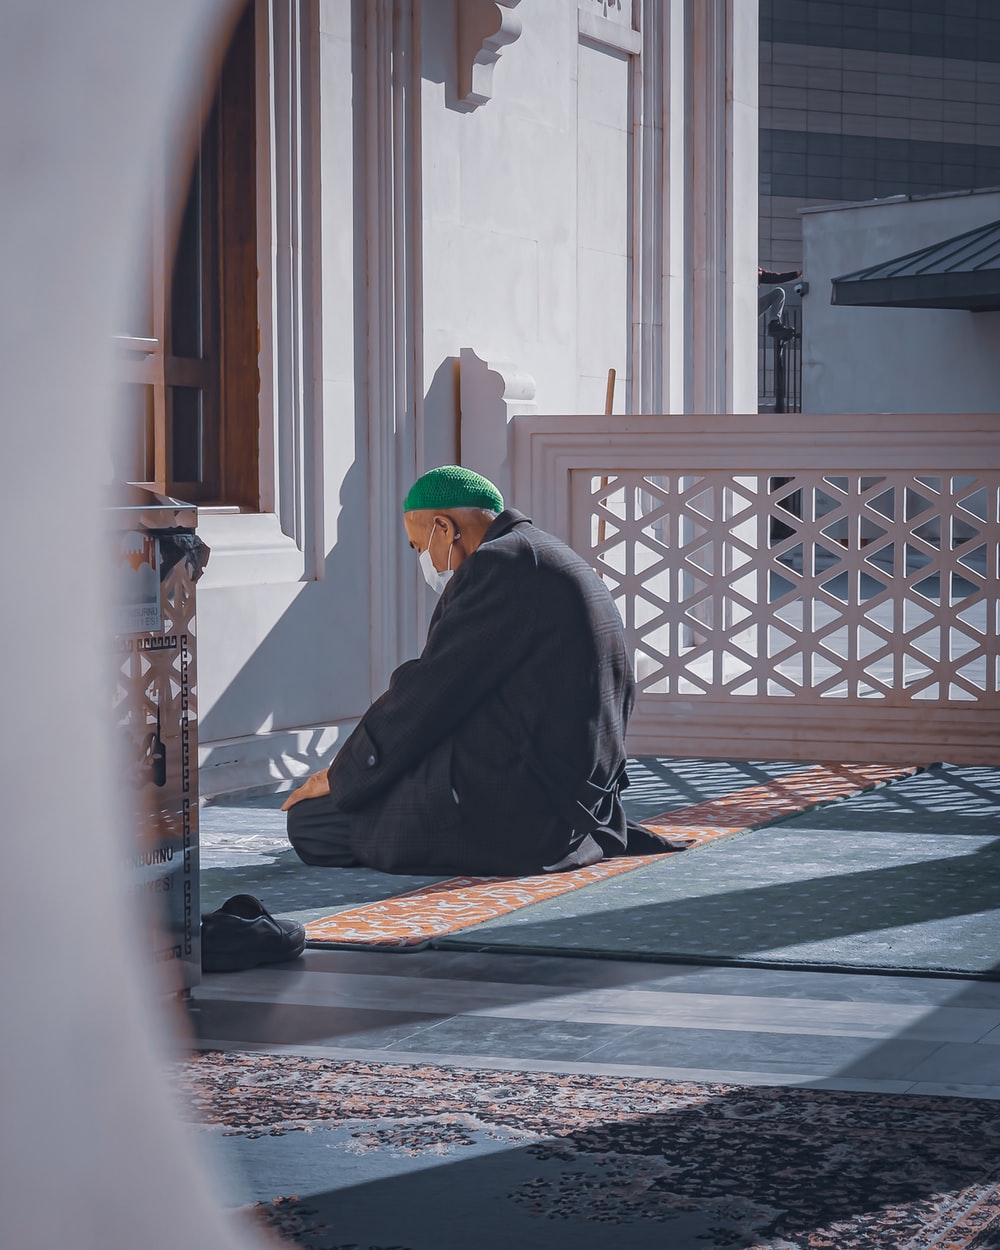 Praying Muslim Picture. Download Free Image